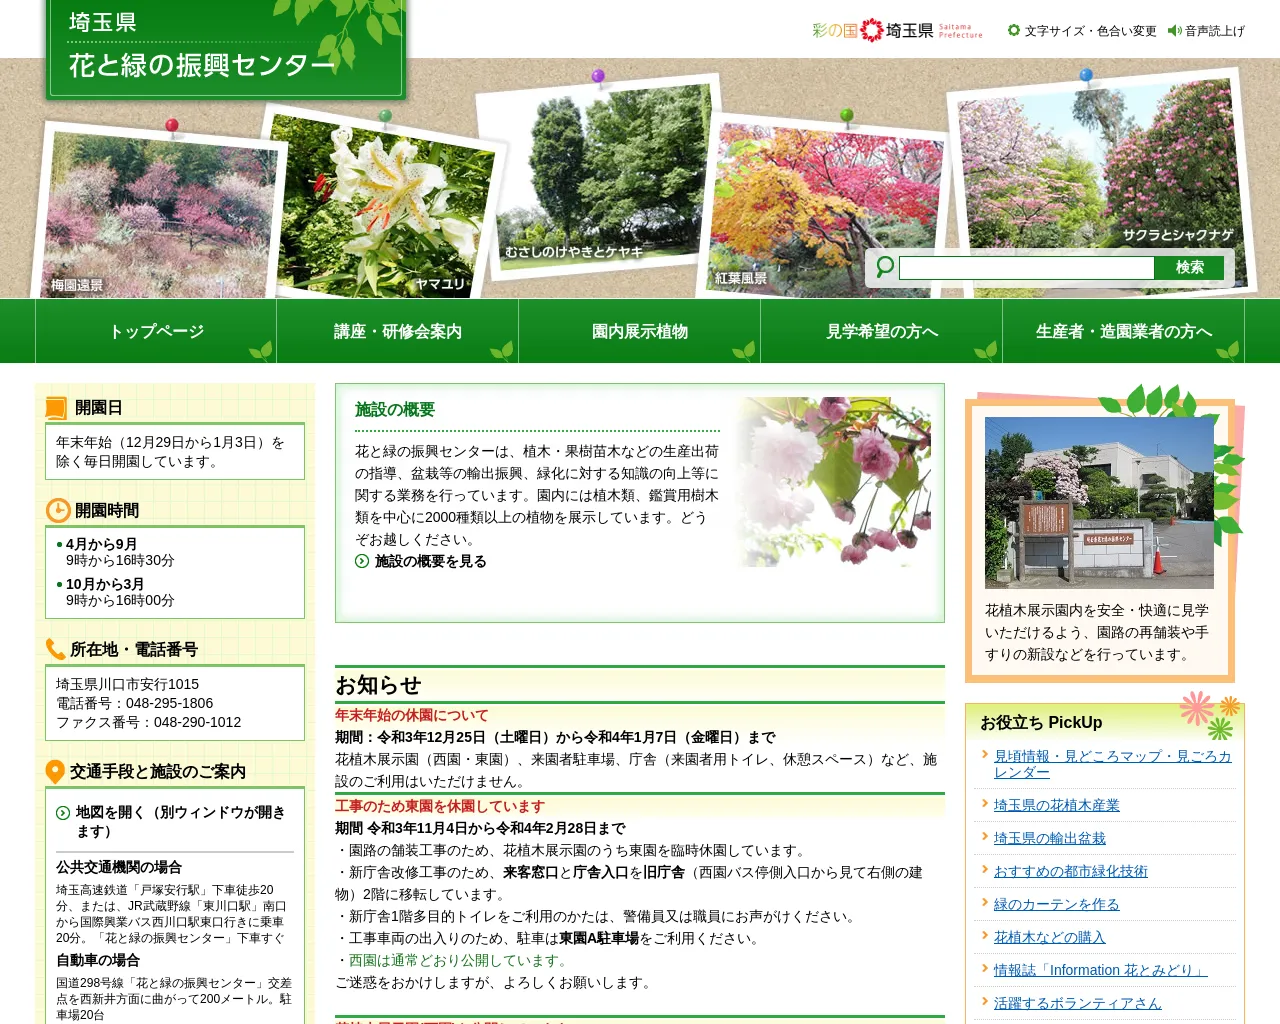 埼玉県 花と緑の振興センター site